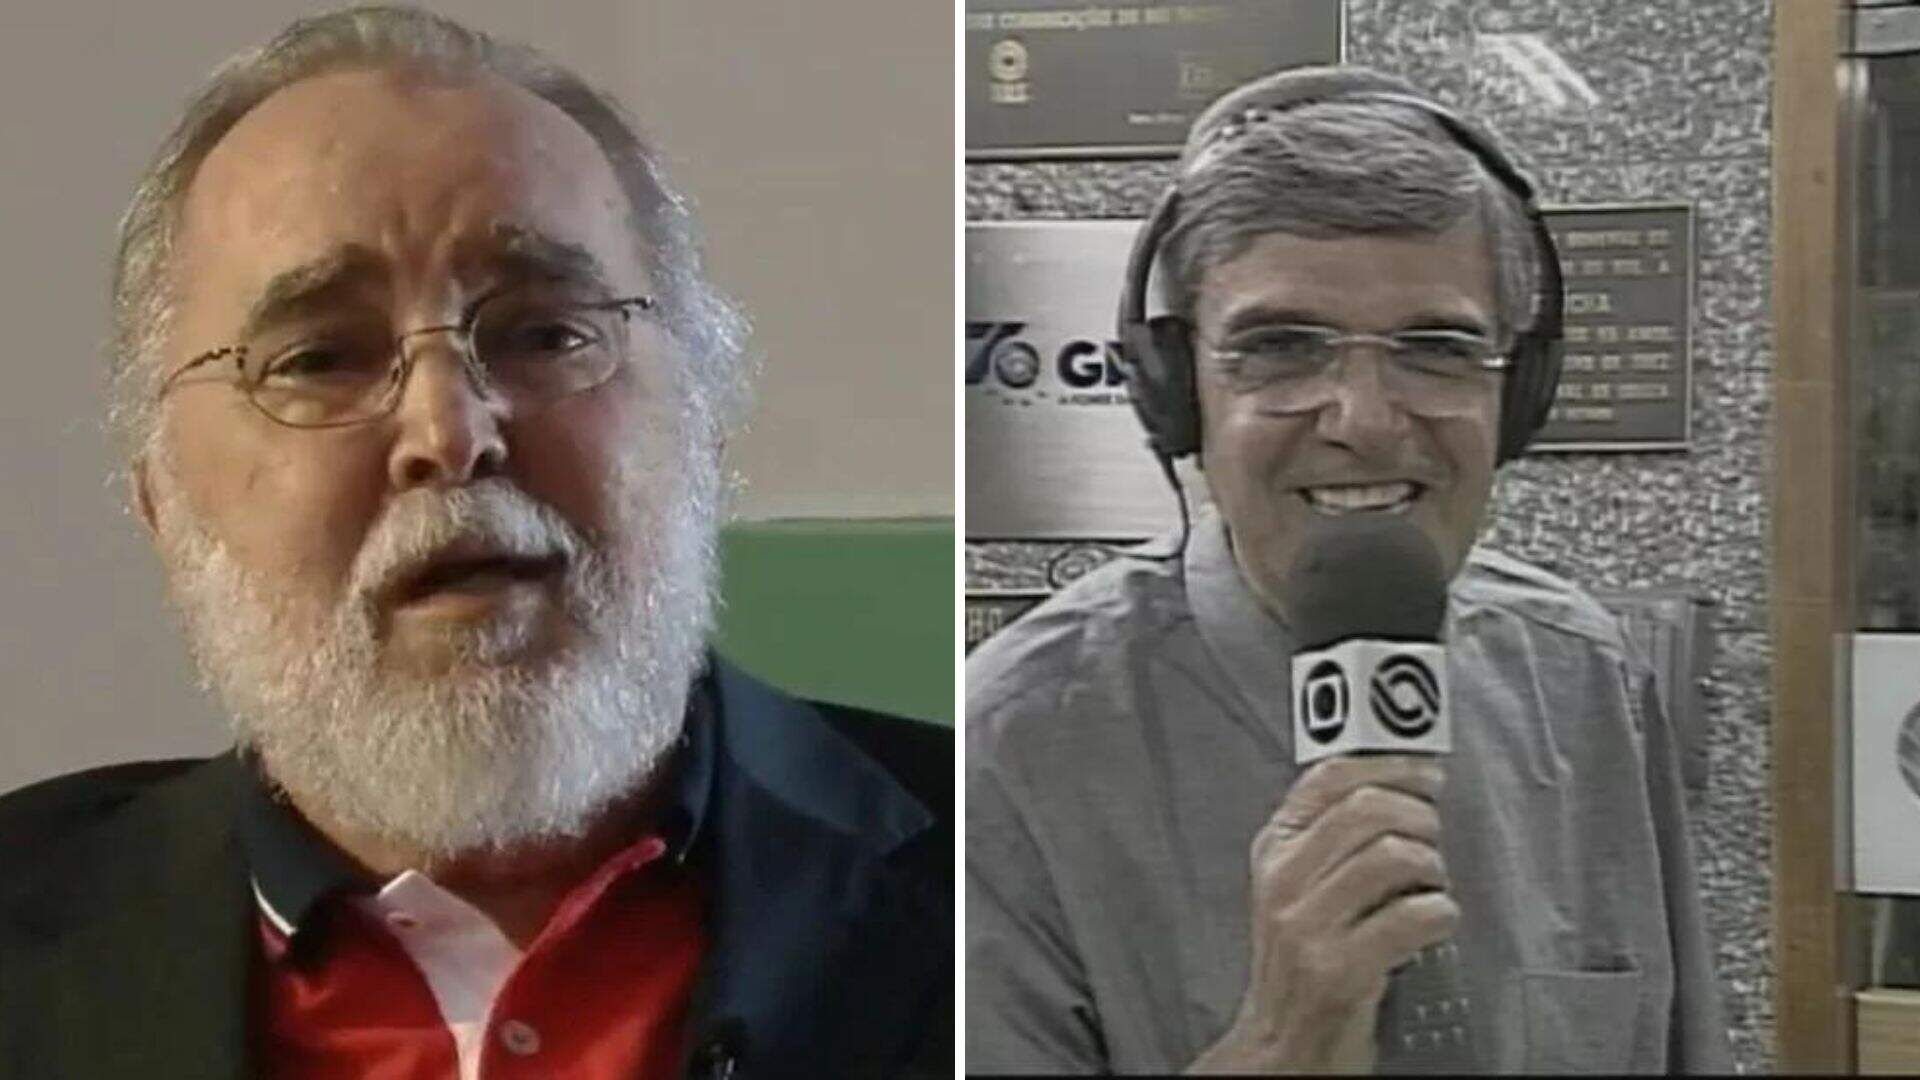 Luto! Jornalistas Armindo Ranzolin e Jorge da Cunha Lima morrem nesta quarta (17) - Metropolitana FM